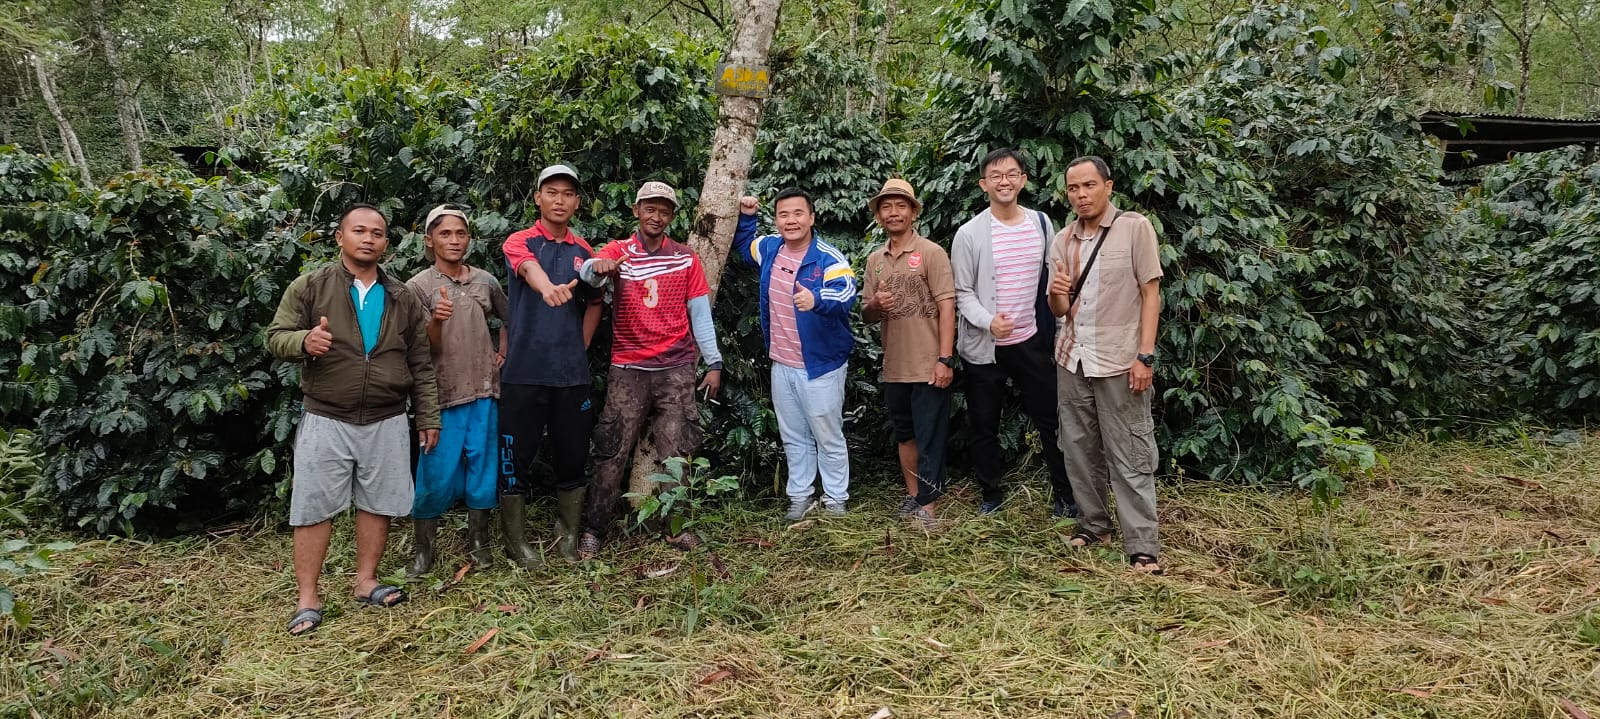 Video laden: Unser Team in der wilden Luwak-Kaffeeplantage